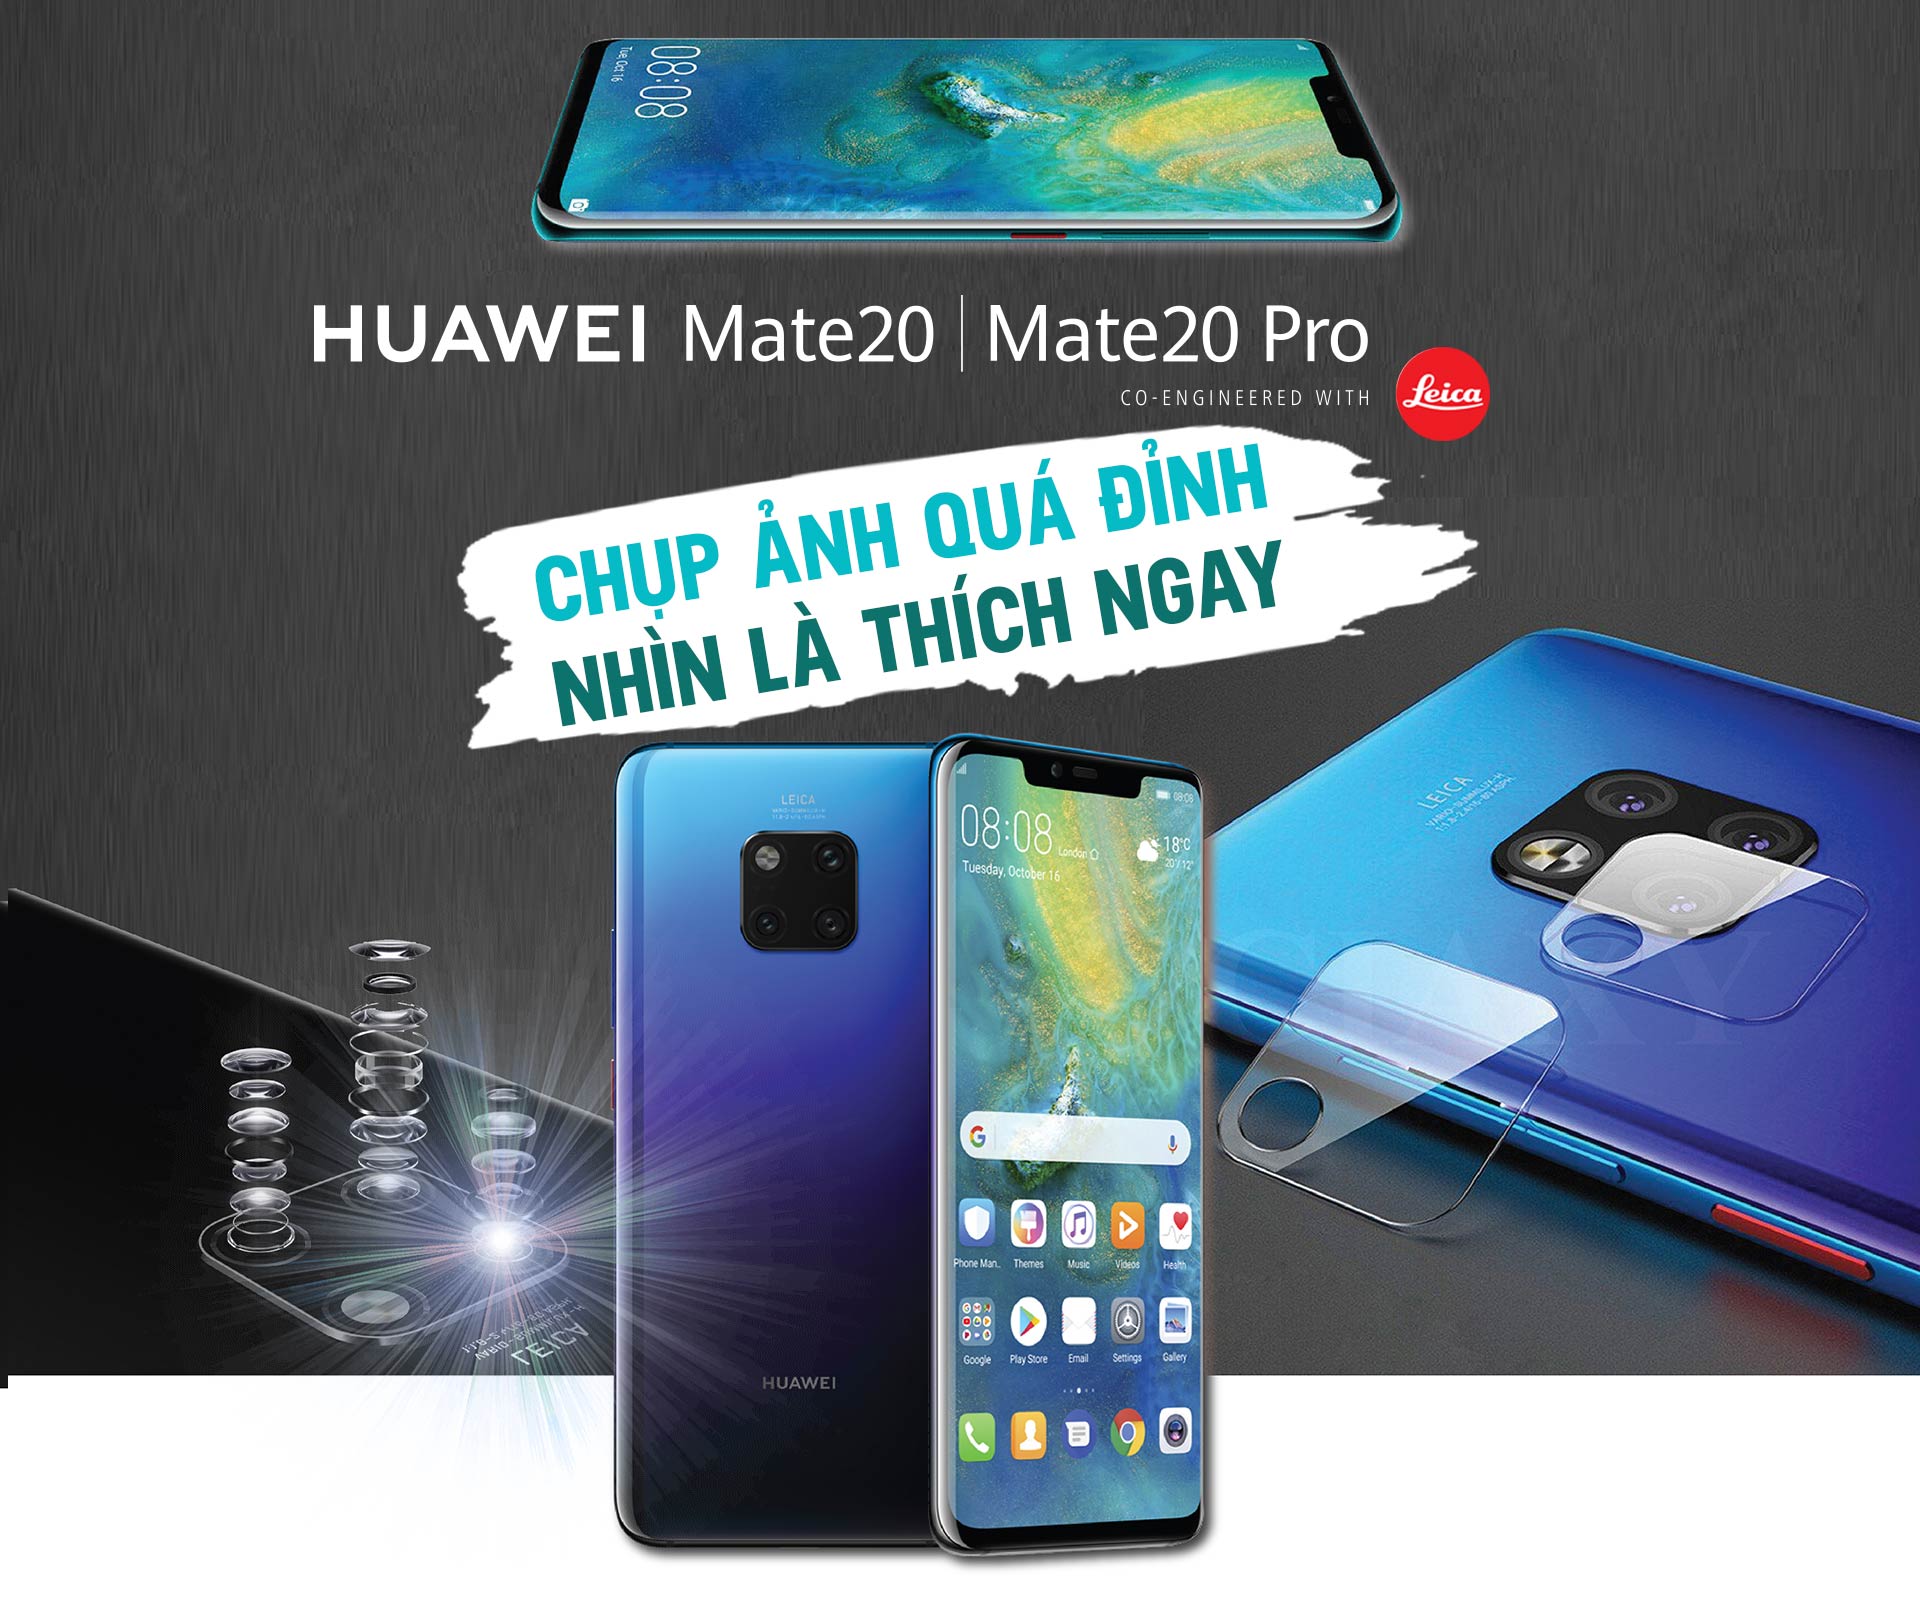 Huawei Mate 20 Pro chụp ảnh quá đỉnh, nhìn là thích ngay - 1